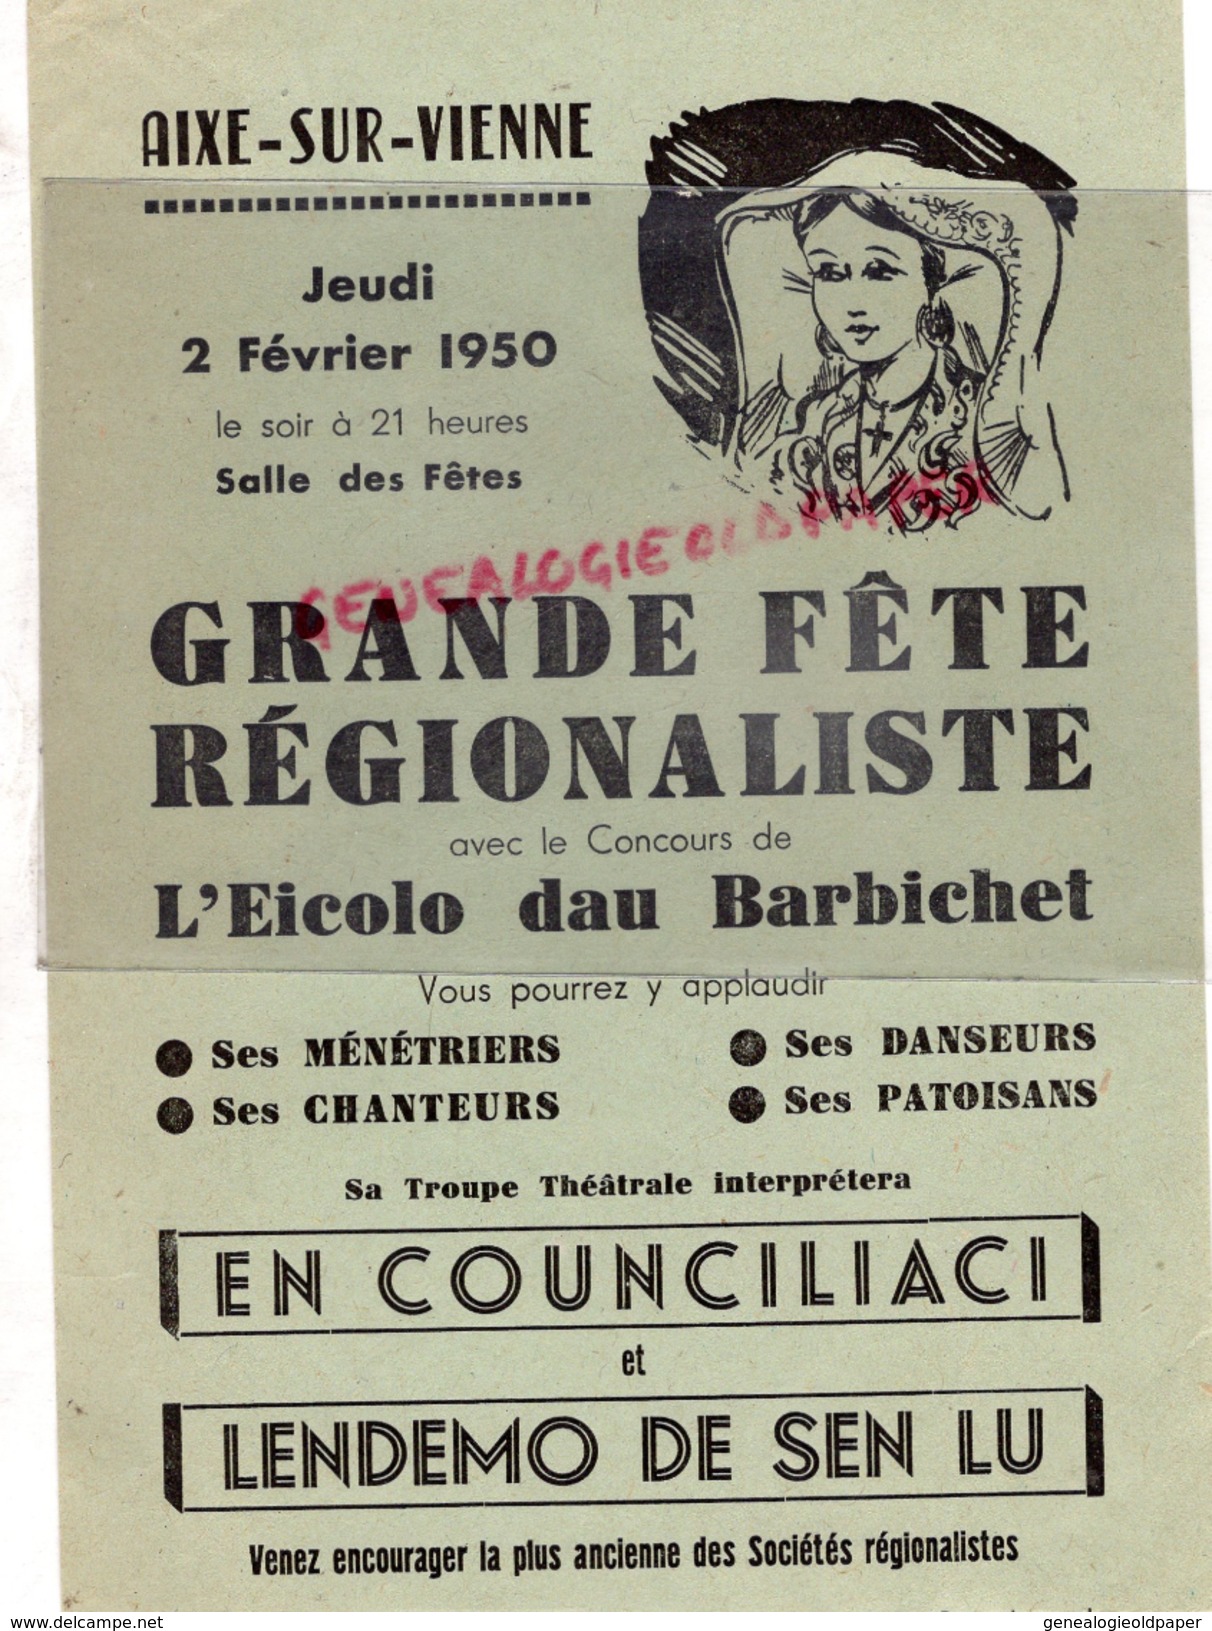 87 - AIXE SUR VIENNE- AFFICHE GRANDE FETE REGIONALISTE-EICOLO DAU BARBICHET-2 FEVRIER 1950- SALLE DES FETES - Posters